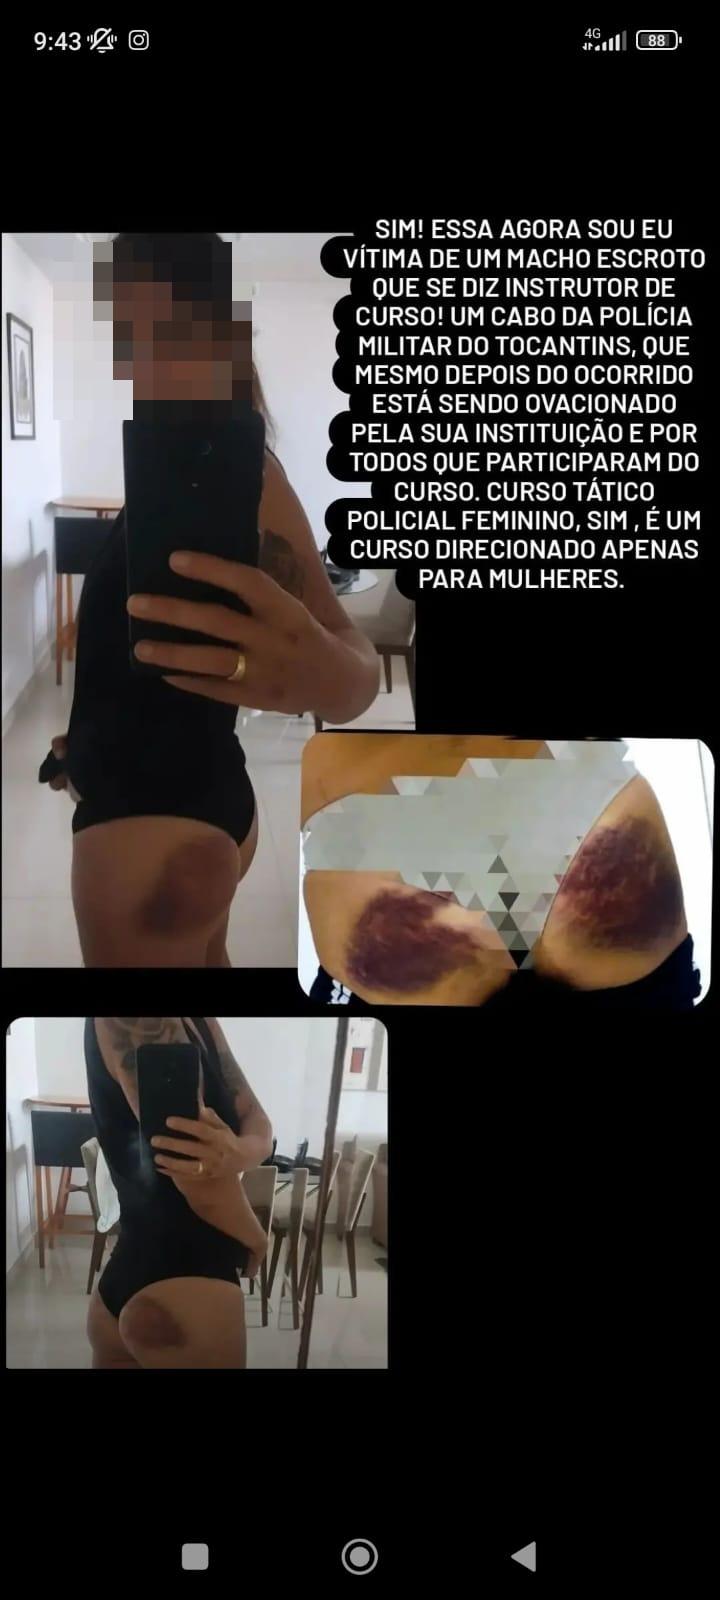 relato e foto de agressão sofrida por policial maranhense em curso no Ceará